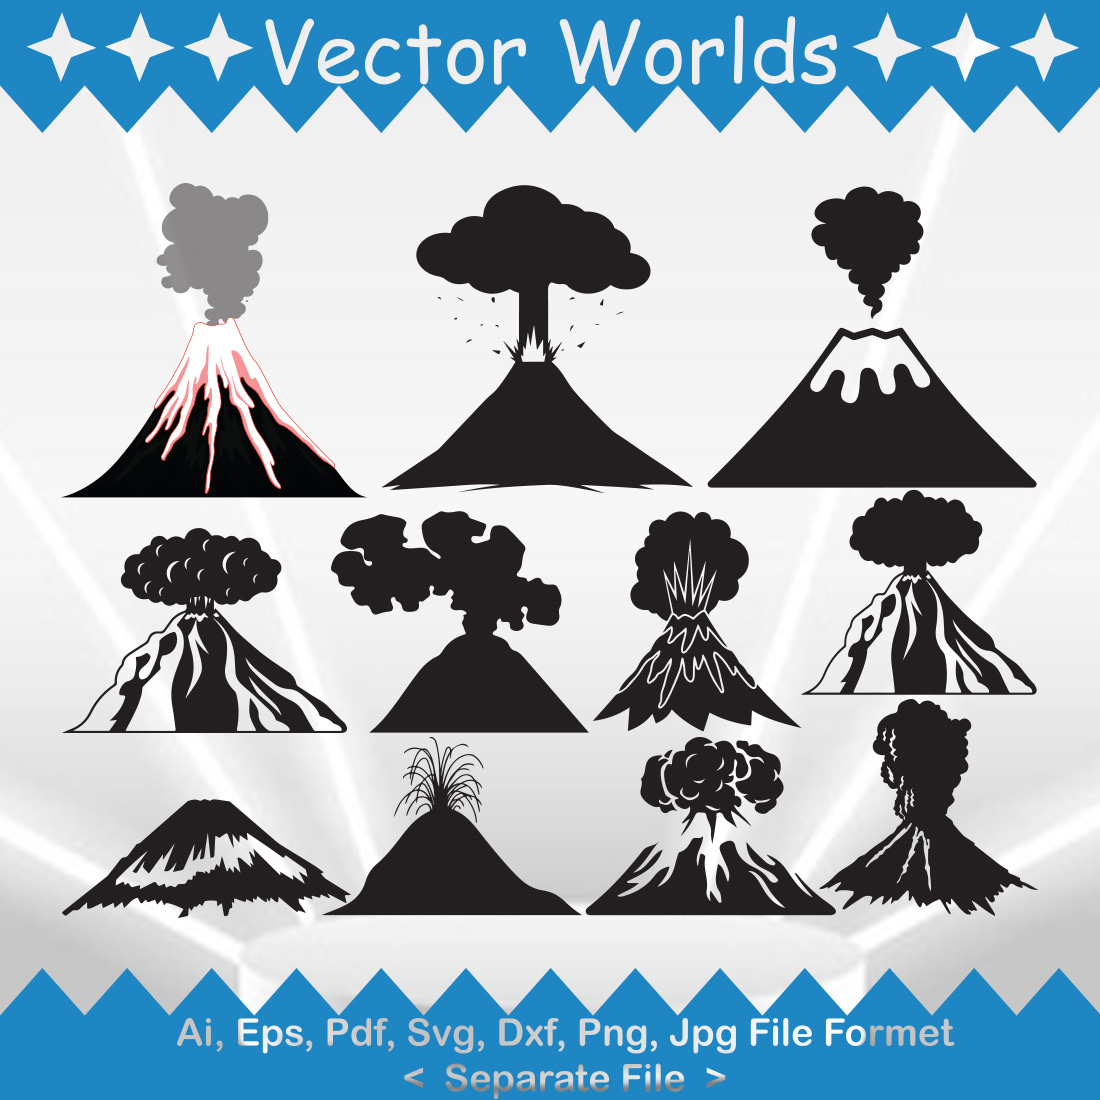 Lava SVG Vector Design cover image.